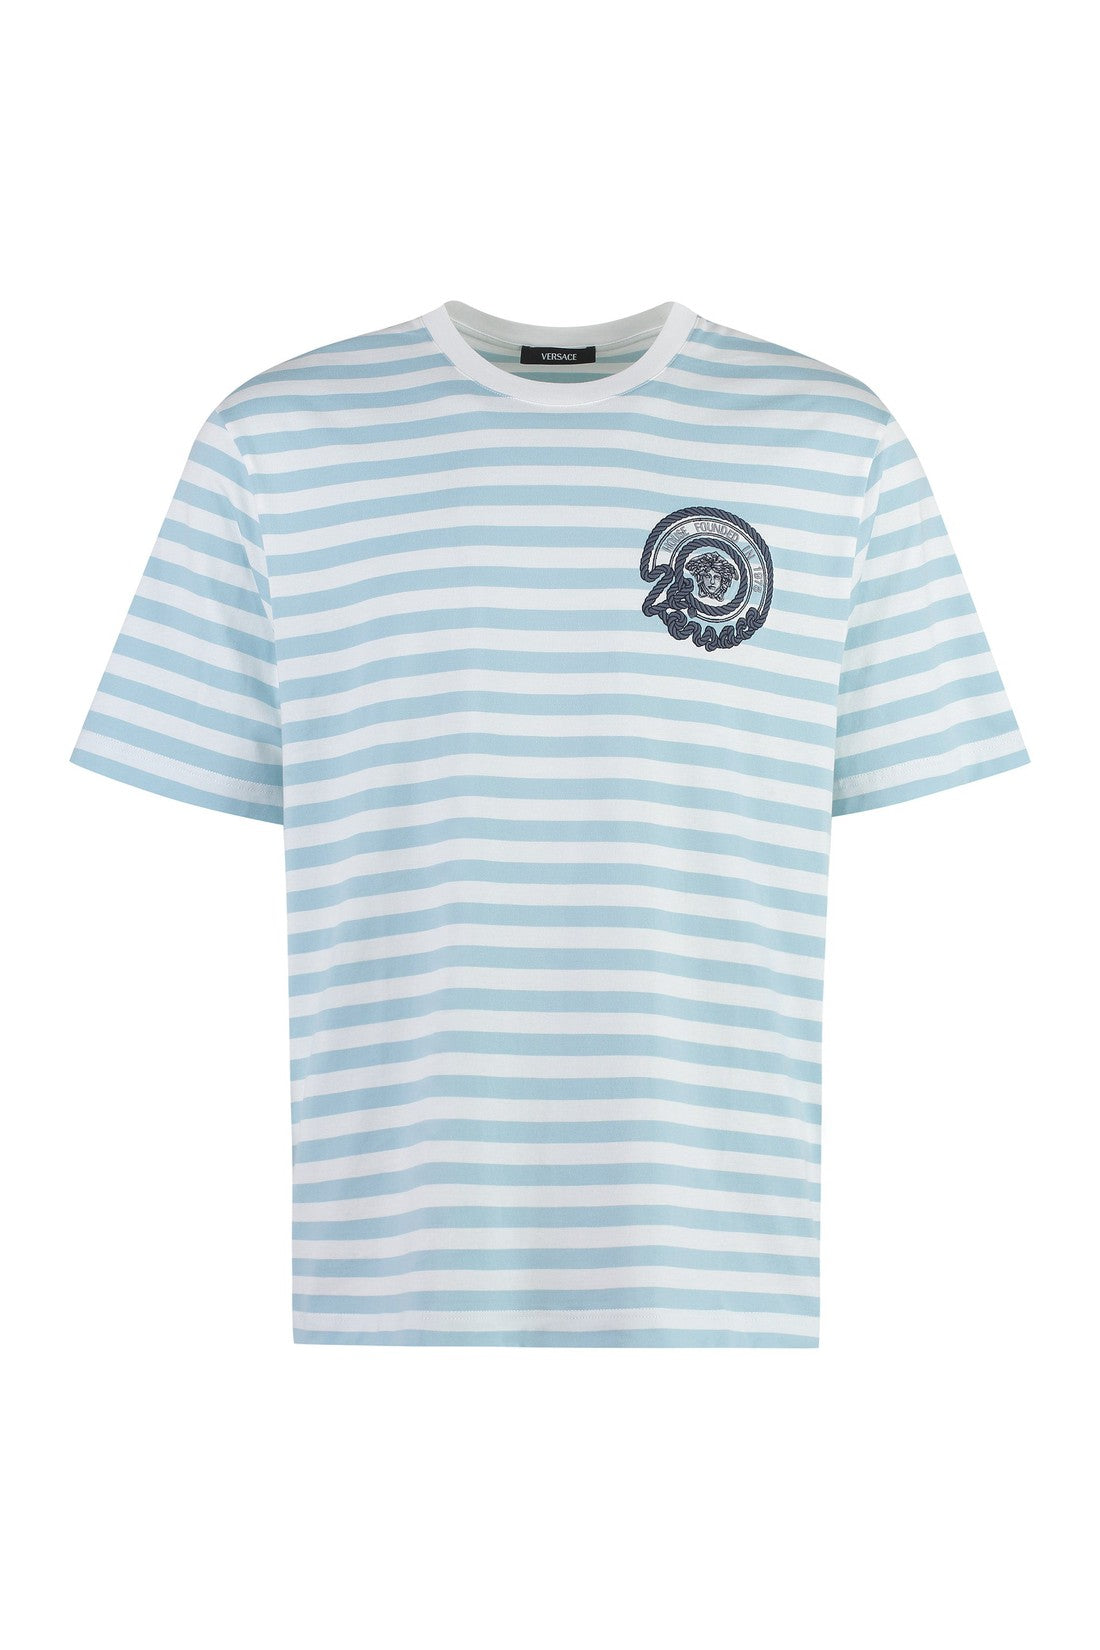 Versace-OUTLET-SALE-Striped cotton t-shirt-ARCHIVIST